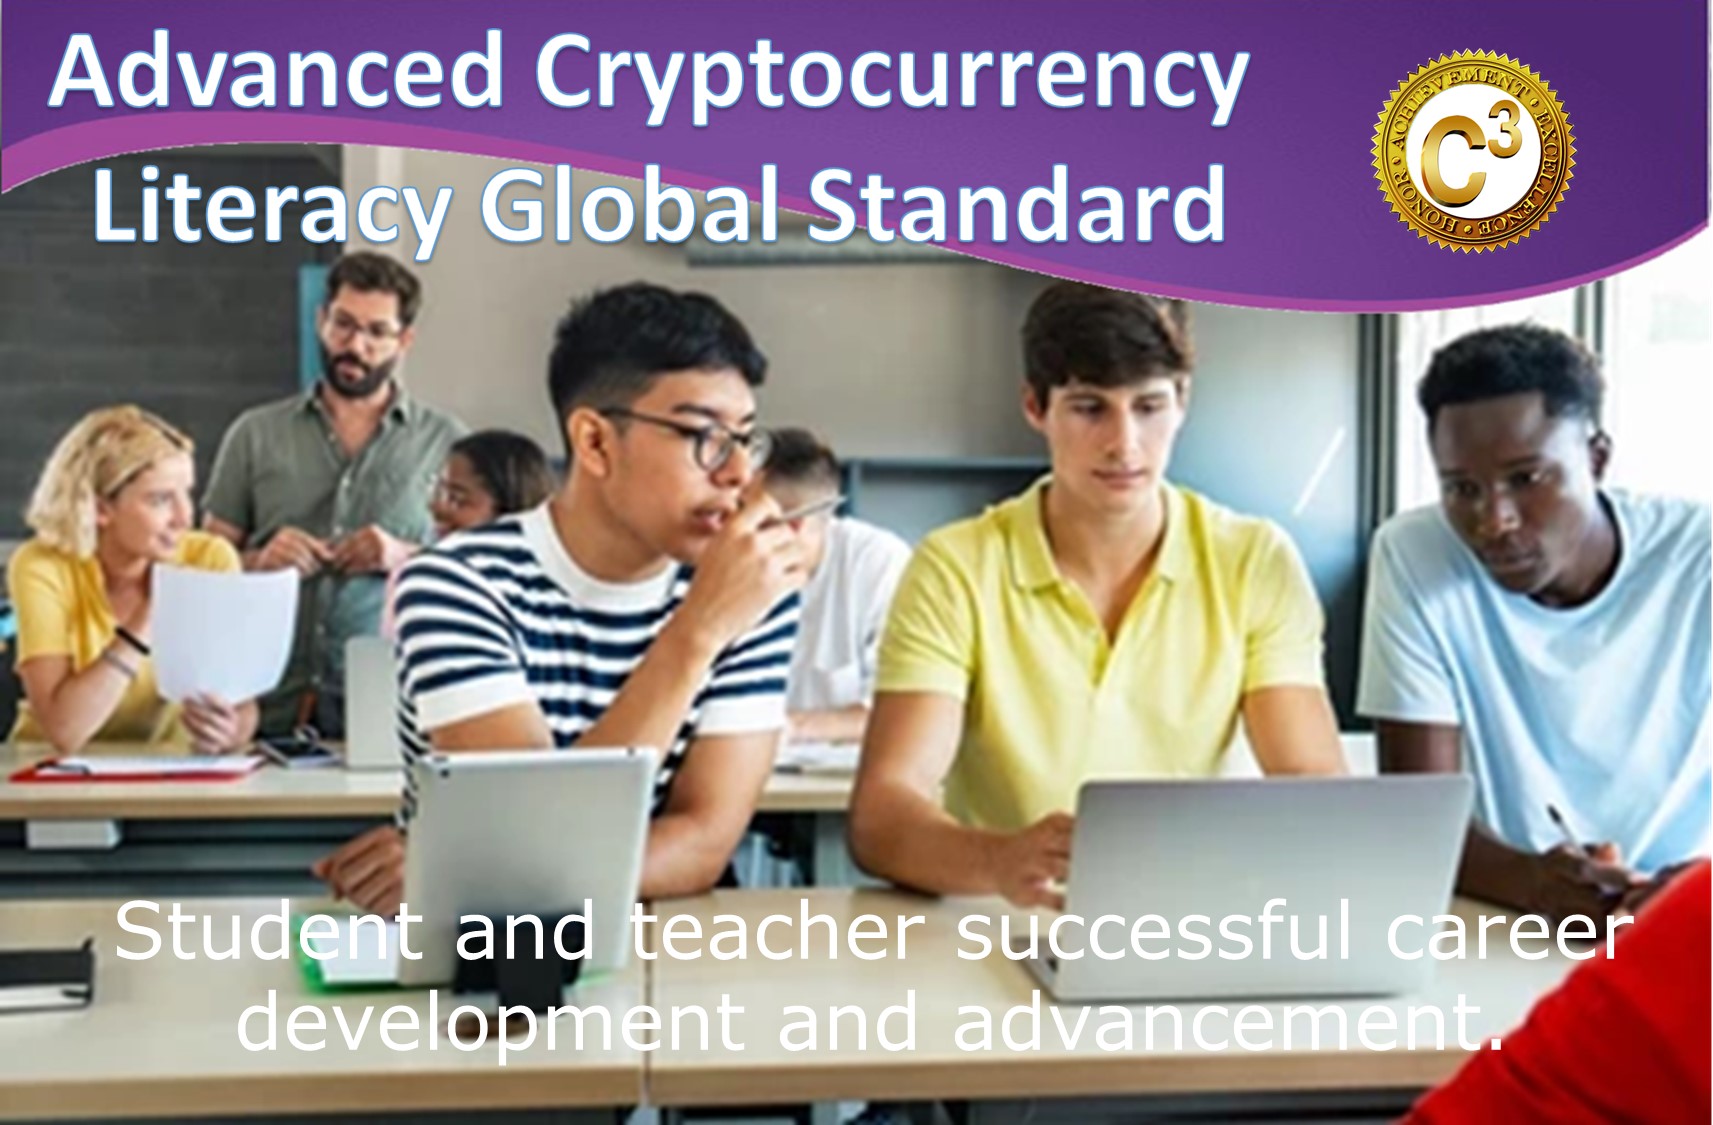 Certify C3 高级加密货币知识普及全球标准